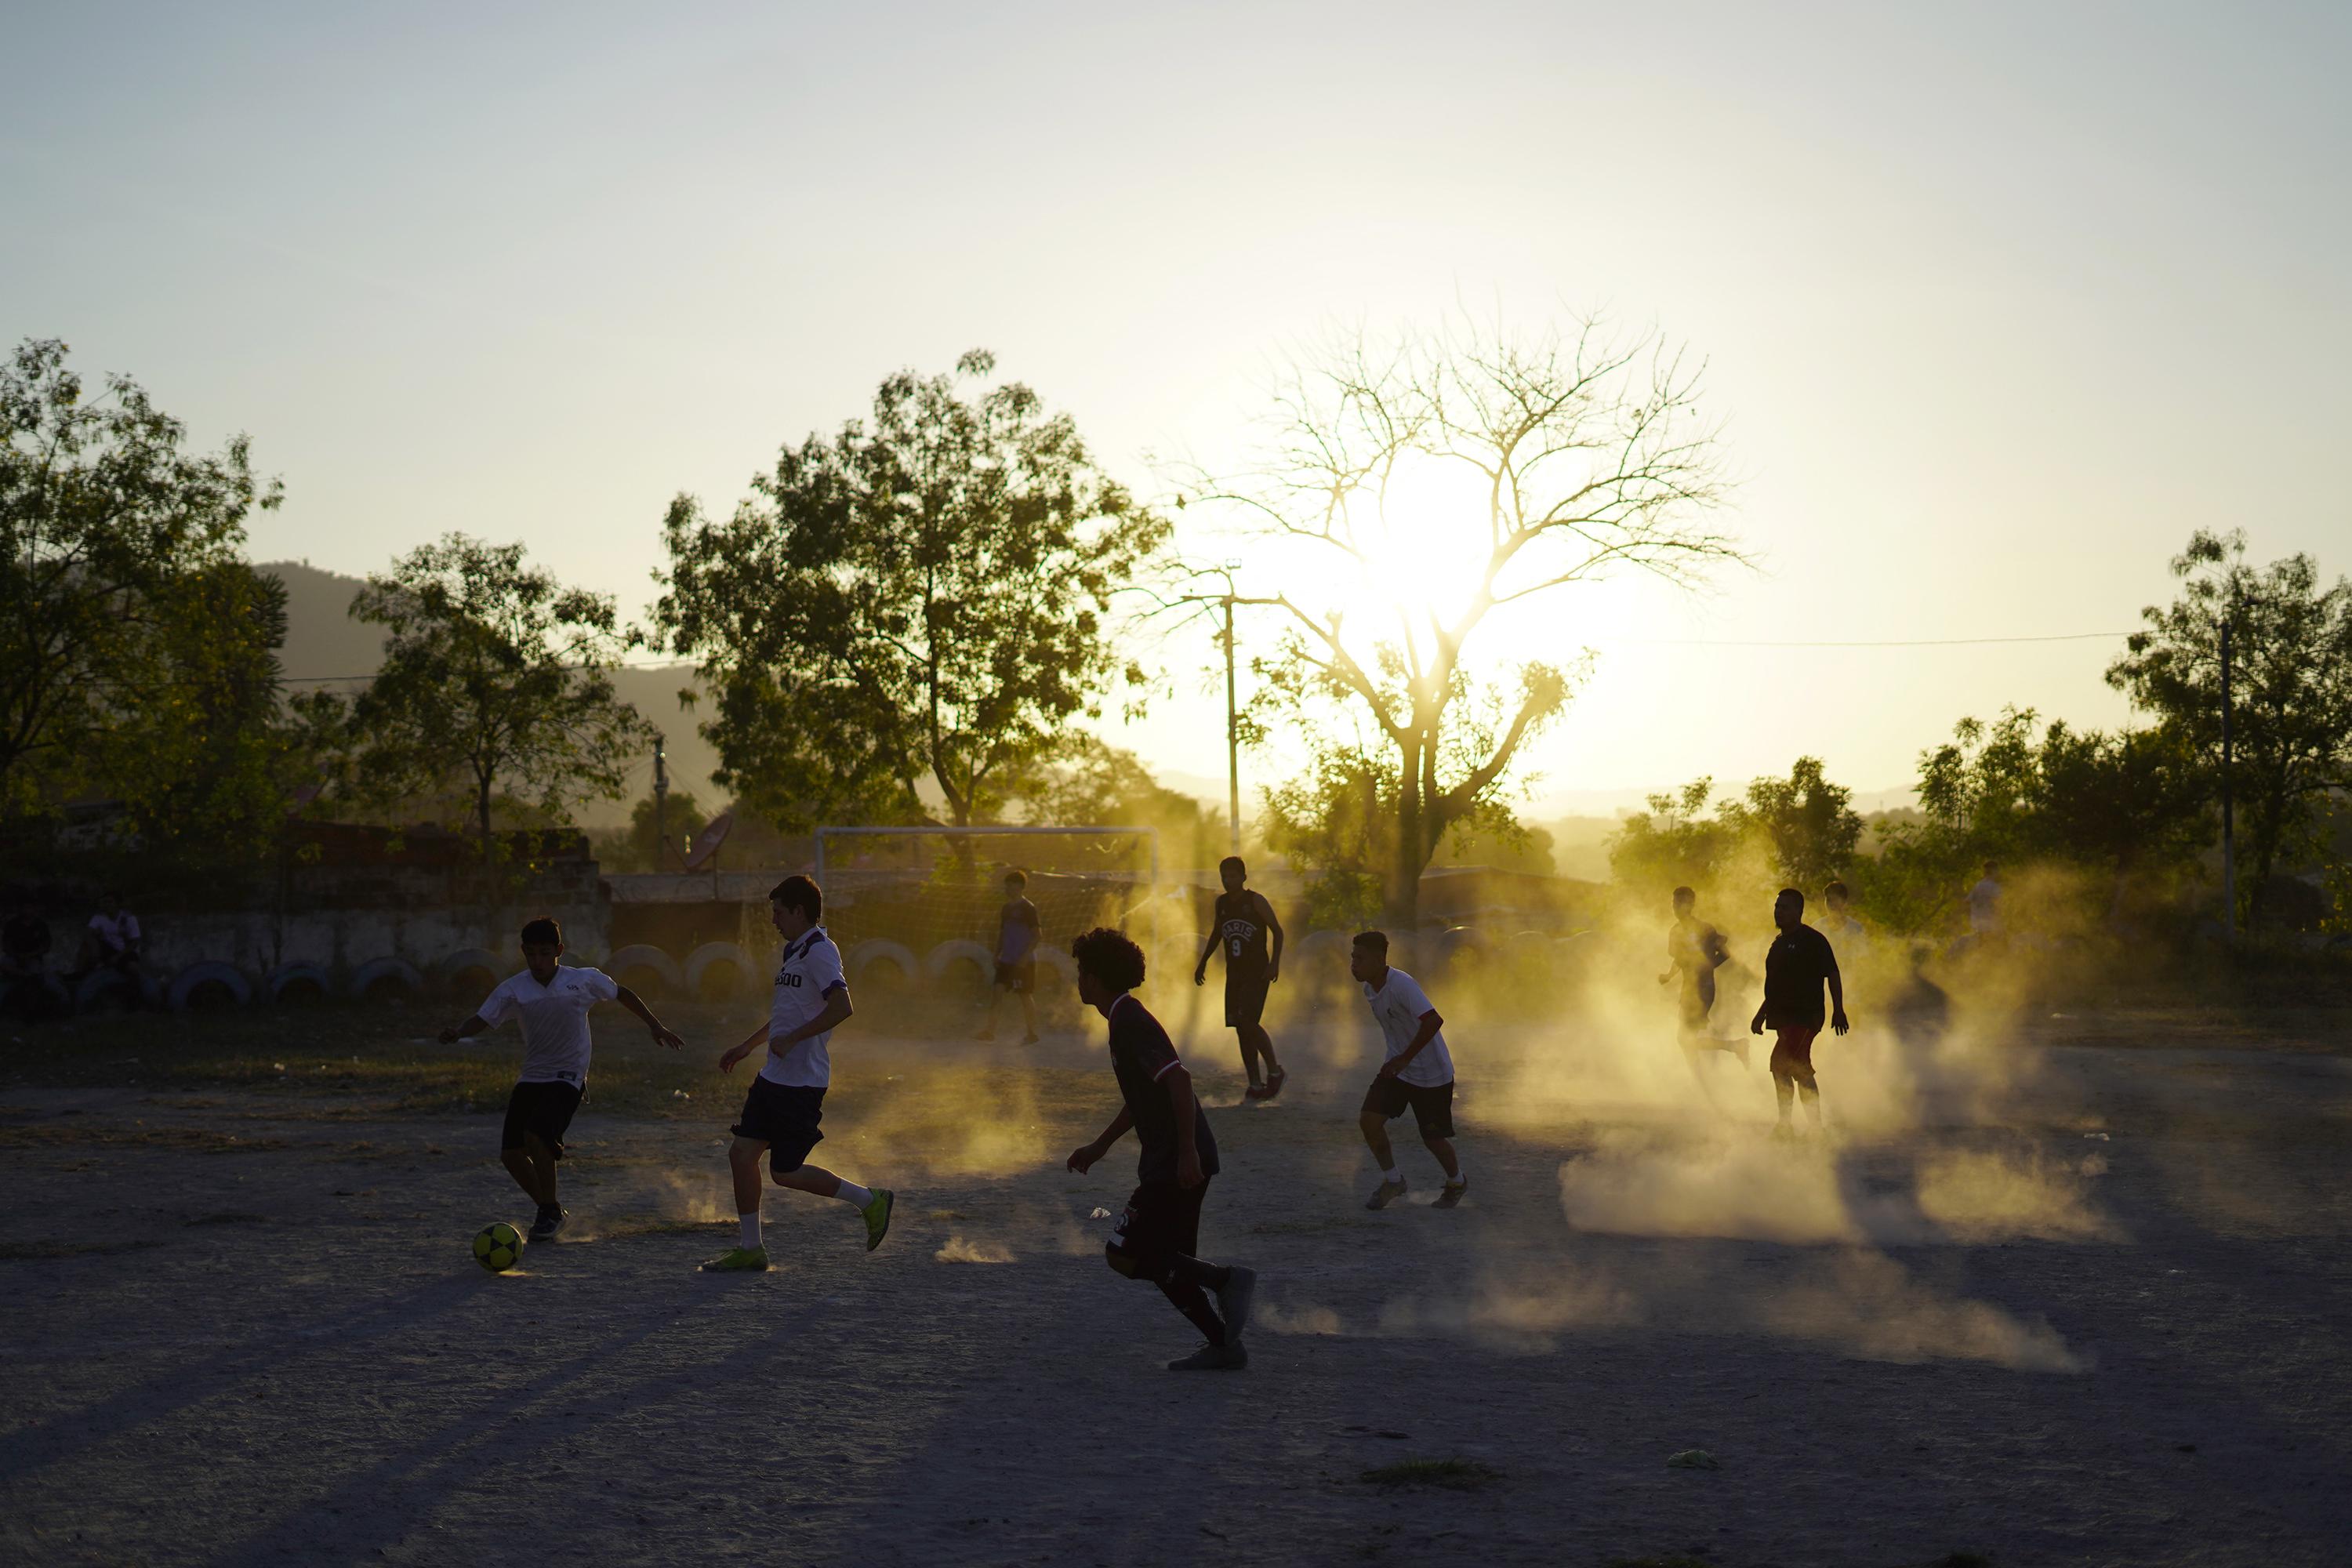 Los habitantes del reparto Las Cañas, en el municipio de Ilopango, juegan al fútbol en la vieja que cancha que por muchos años fue una frontera entre la MS-13 y el Barrio 18 Sureños. Los habitantes ahora luchan por unificar a la comunidad. Foto de El Faro: Víctor Peña.